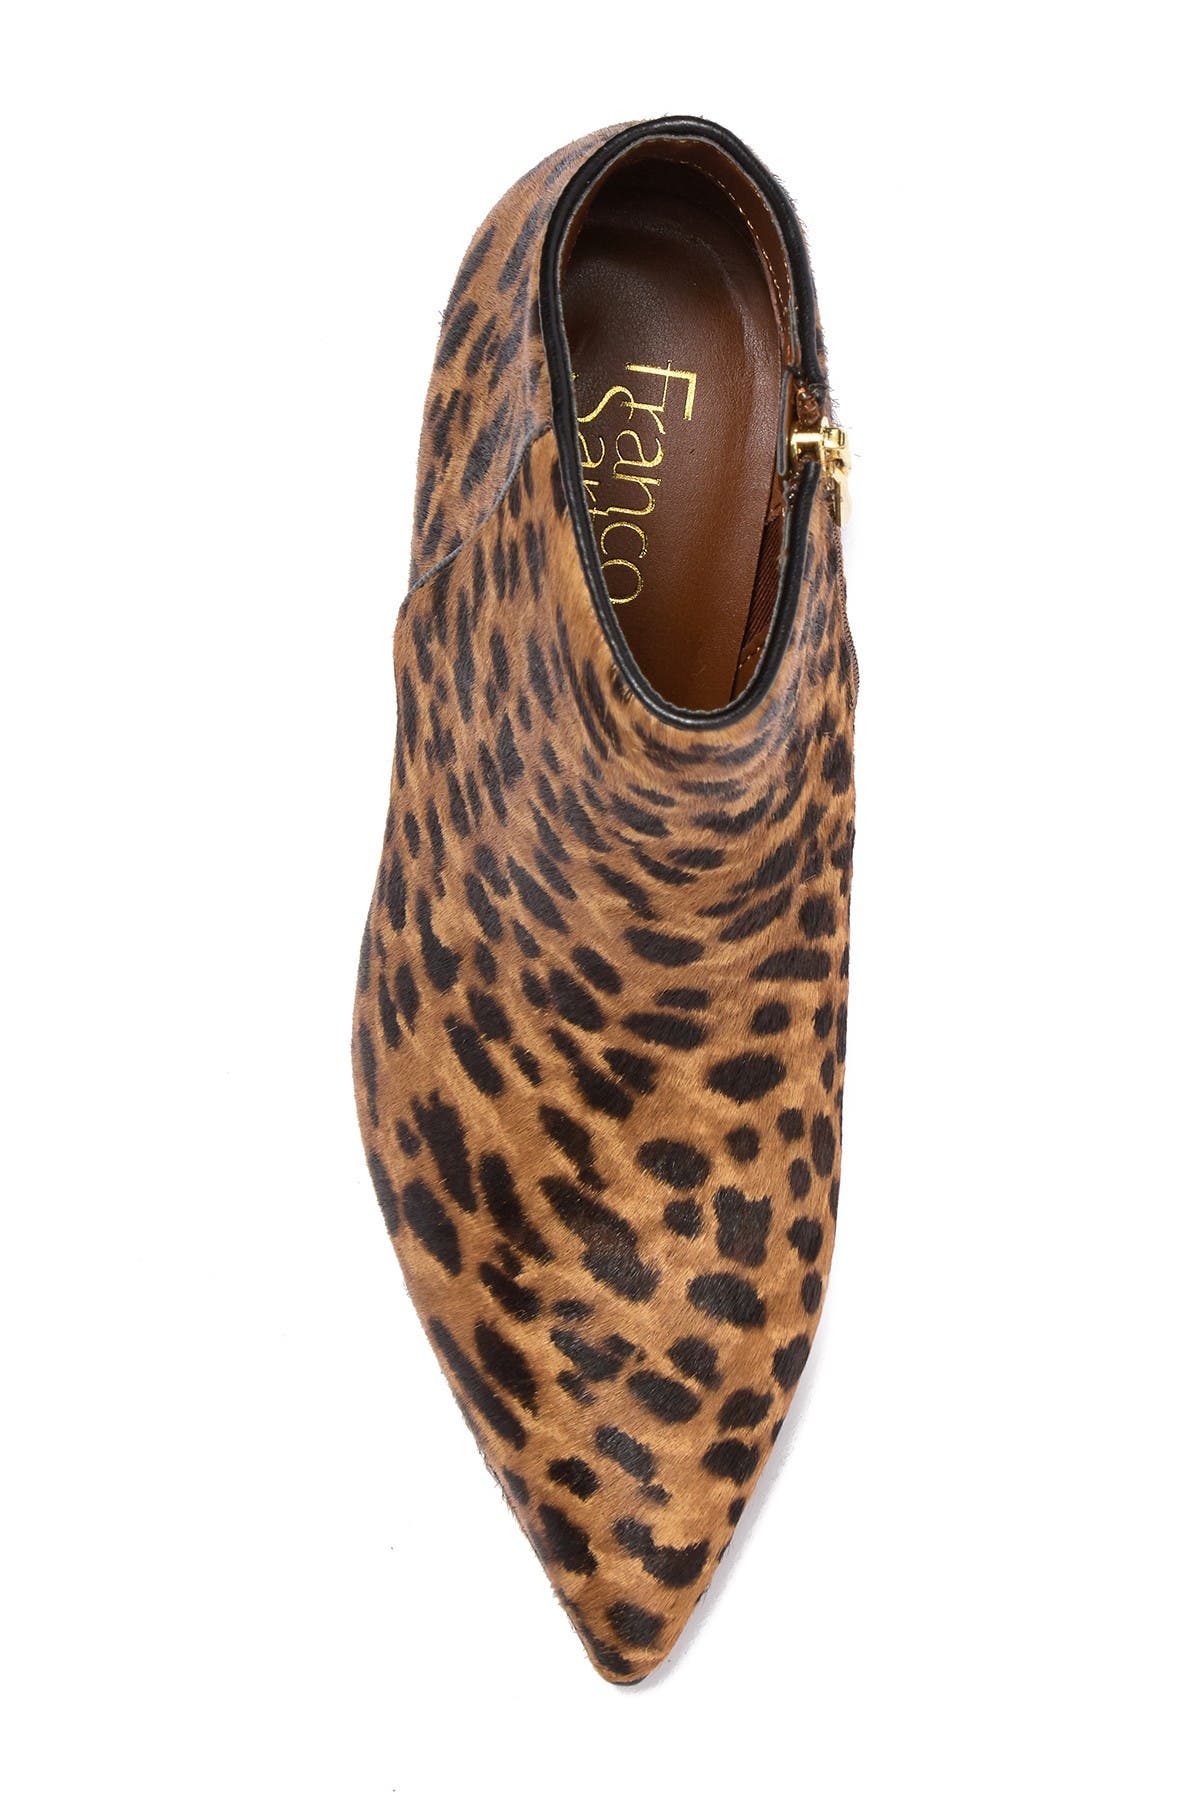 franco sarto arden bootie leopard